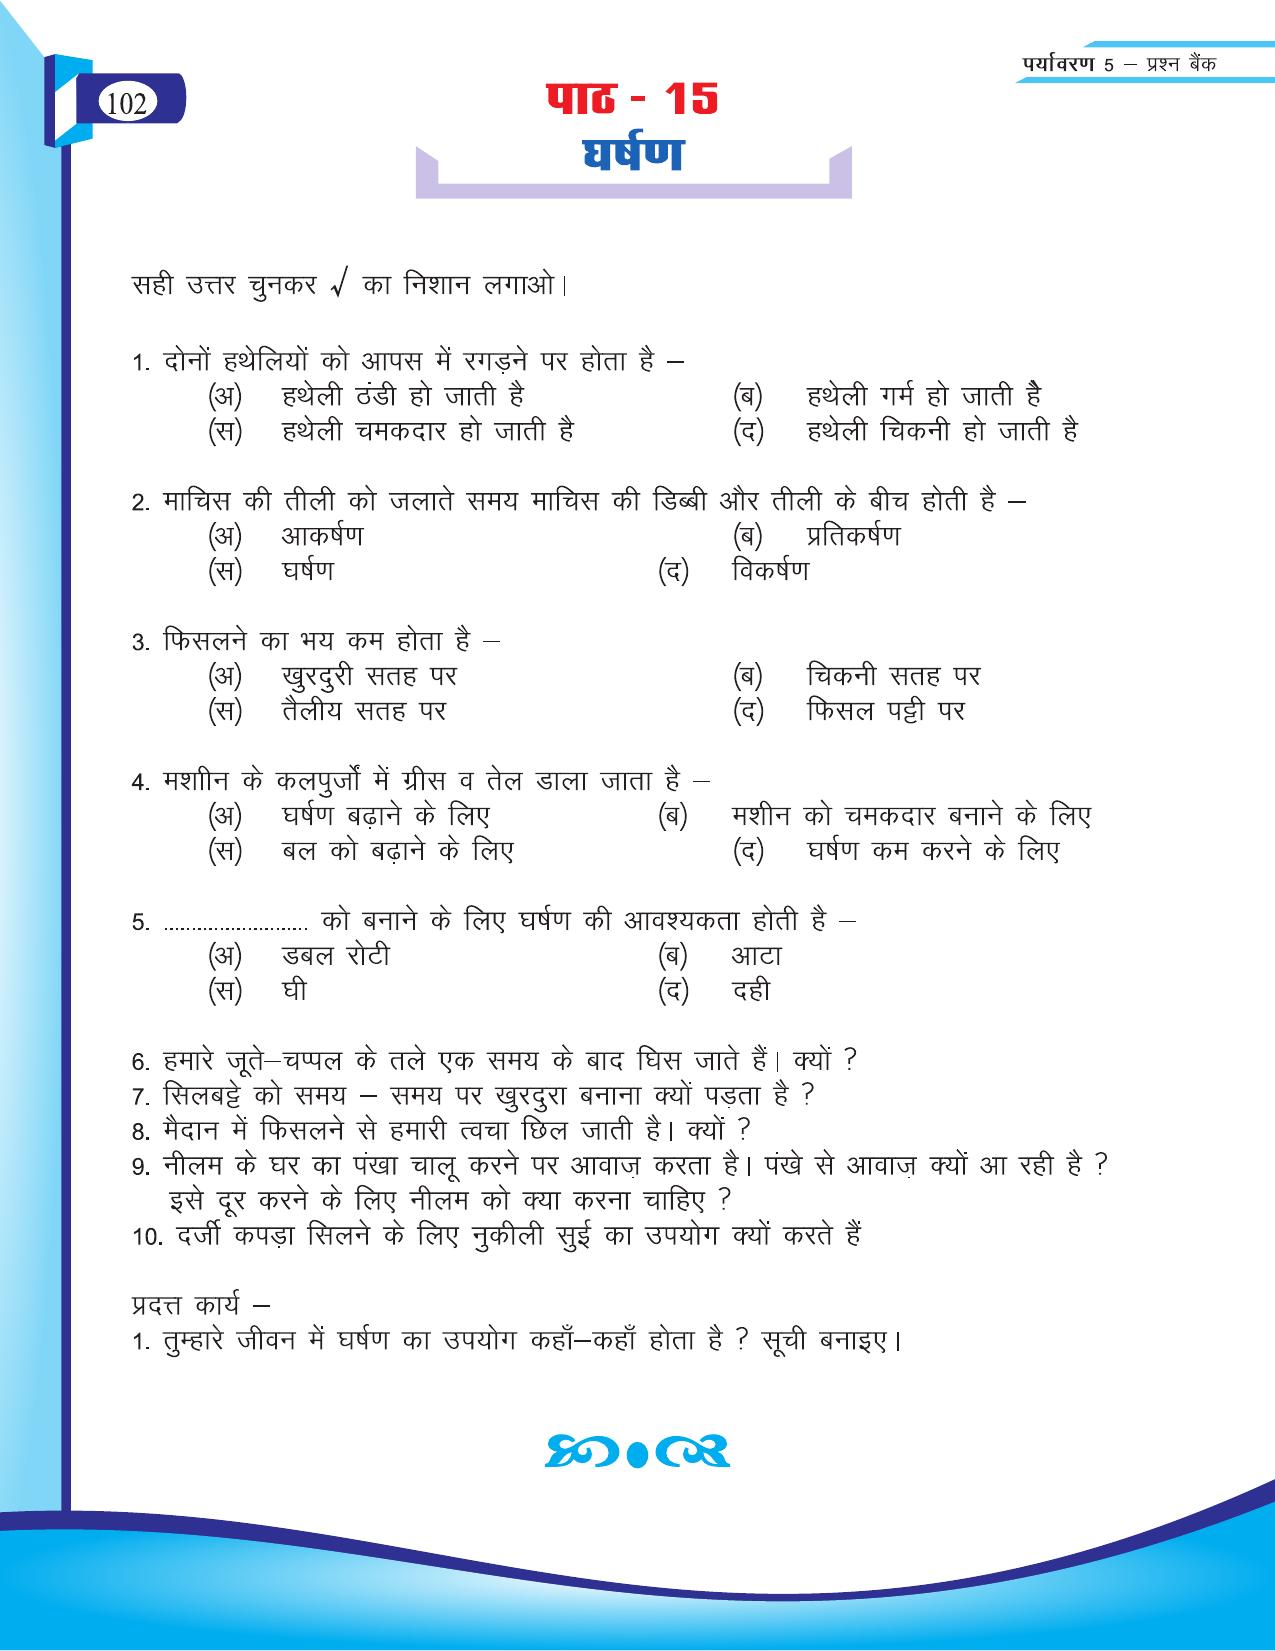 Chhattisgarh Board Class 5 EVS Question Bank 2015-16 - Page 28